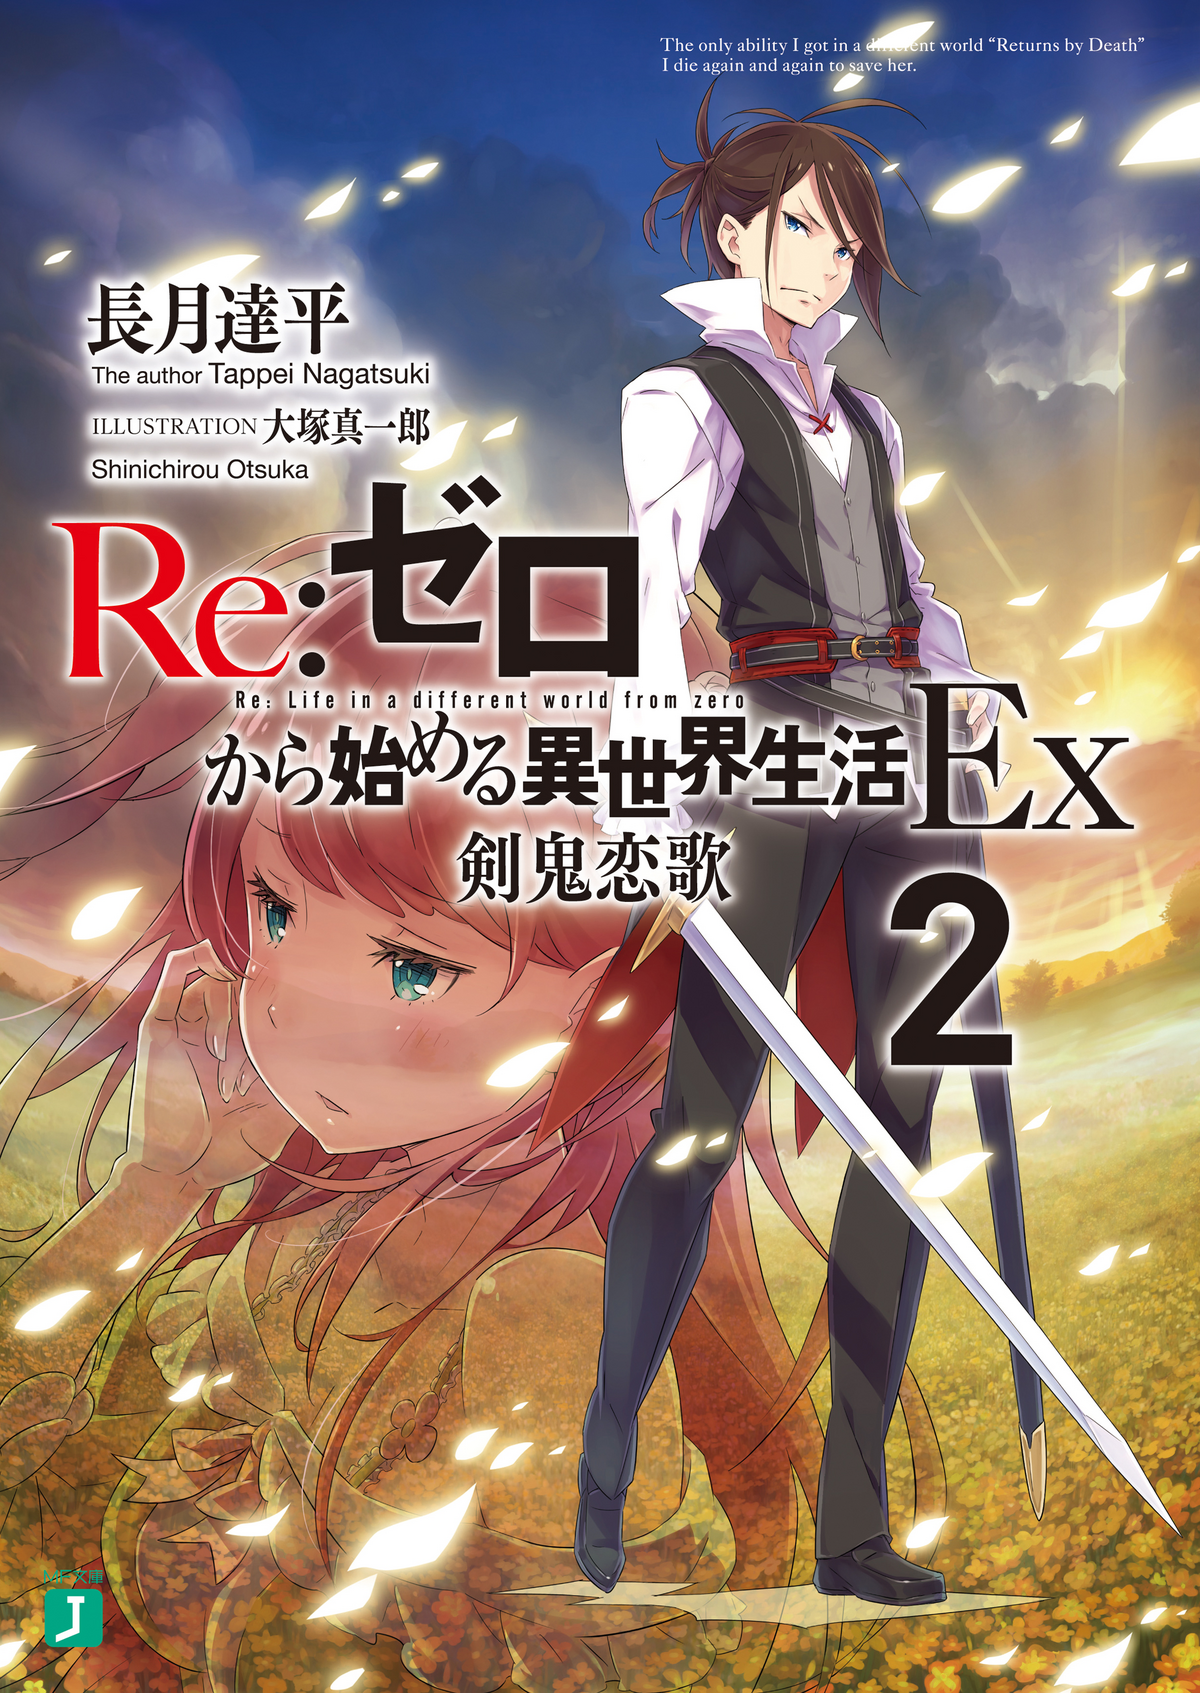 YESASIA: Re:Zero Kara Hajimeru Isekai Seikatsu Vol.2 (Blu-ray